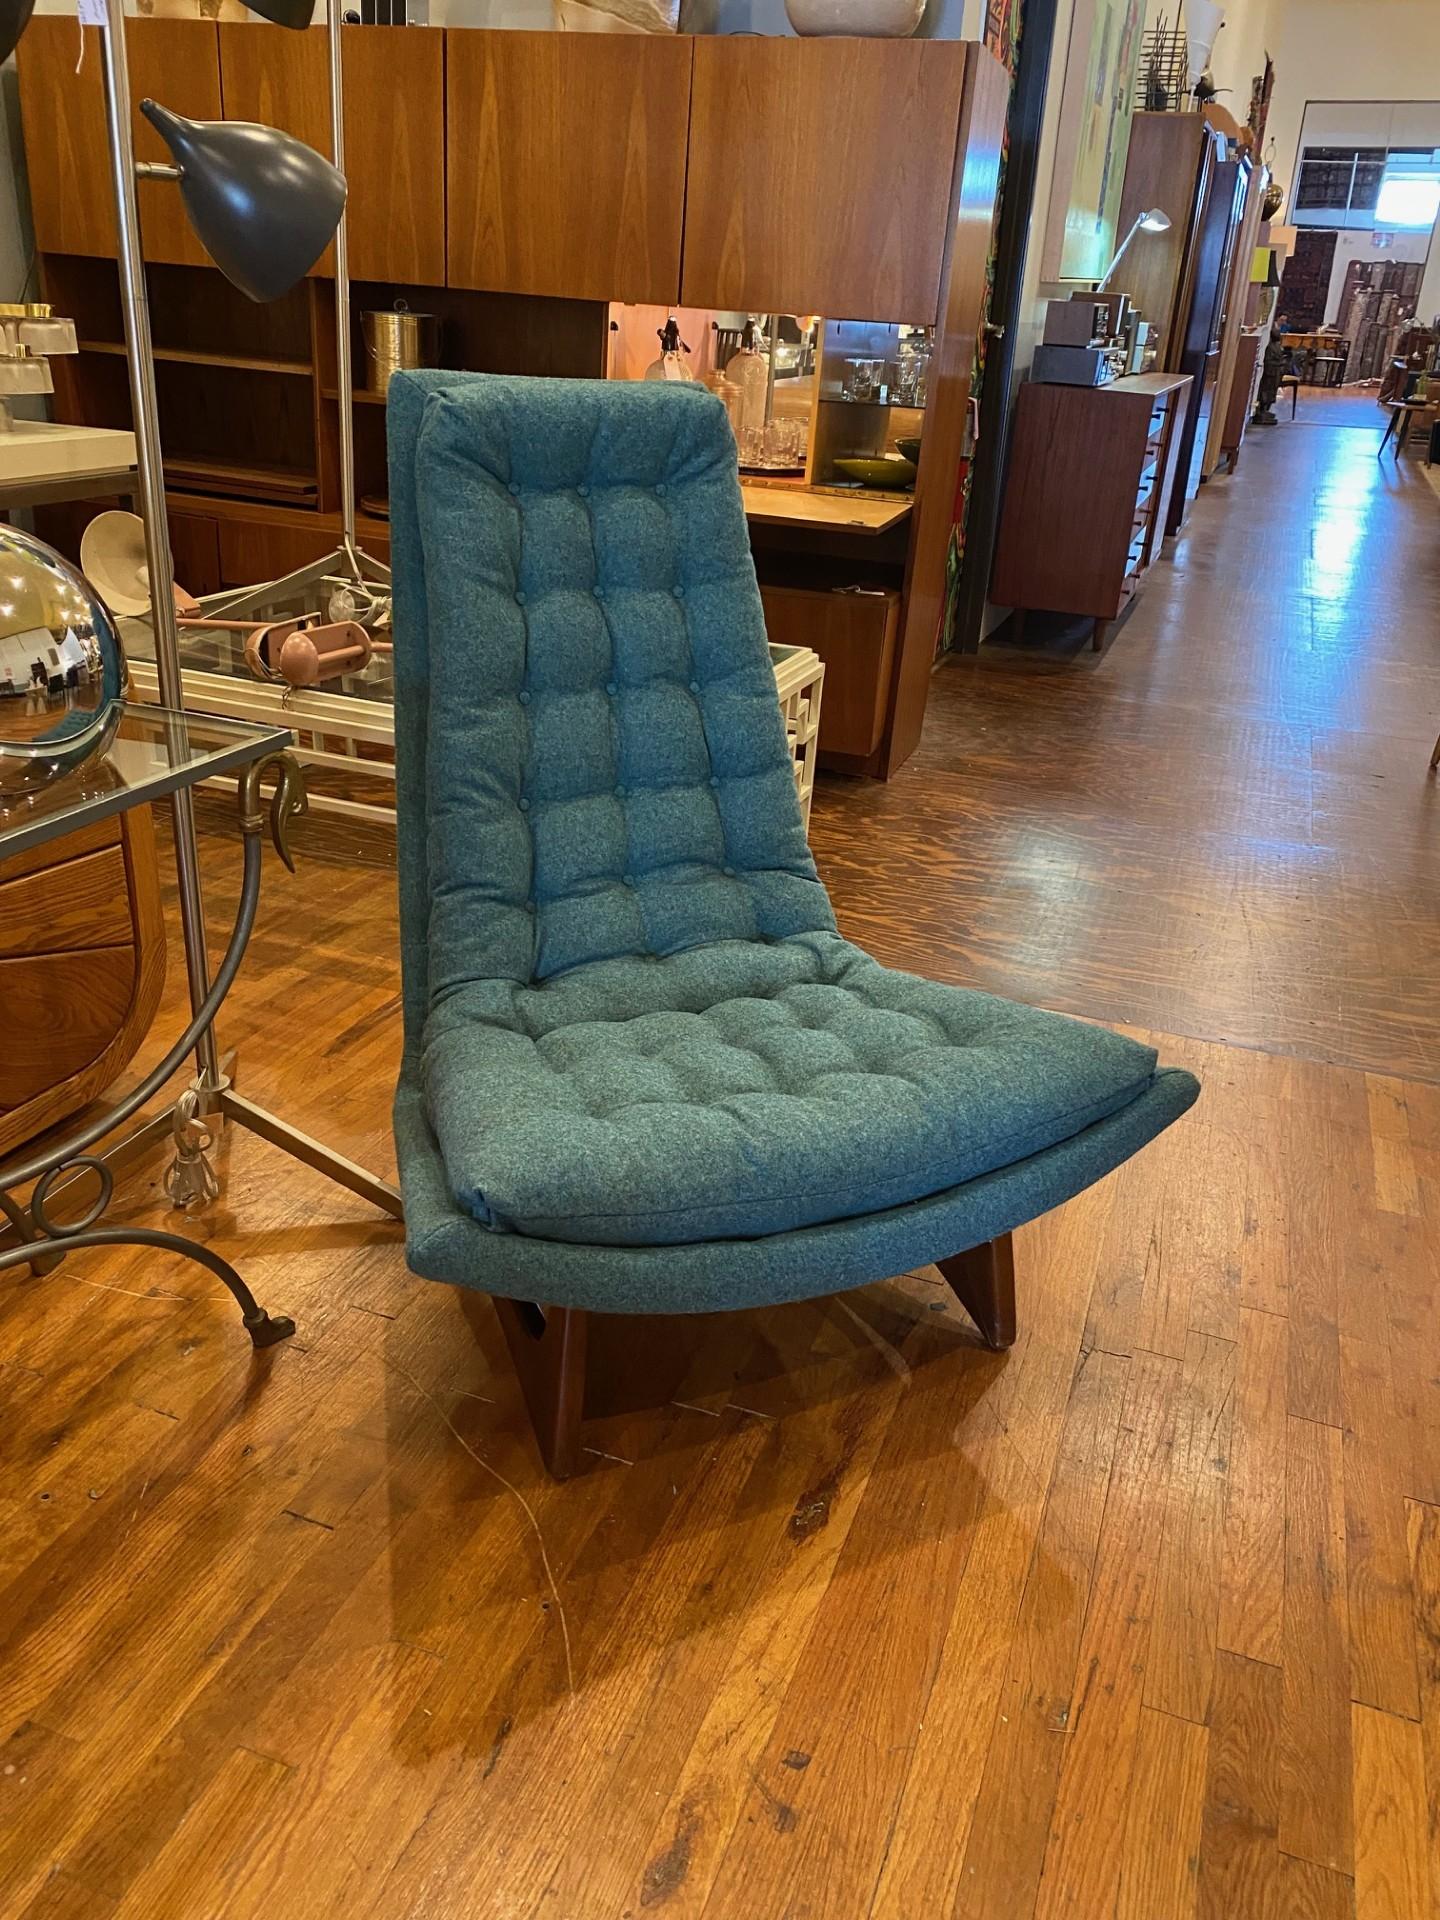 Incroyable fauteuil club/lounge en forme de gondole, attribué au célèbre designer Adrian Pearsall pour Craft Associates. Fabriquée aux États-Unis dans les années 1960, cette chaise respire l'élégance moderne des années 1960. Cette chaise présente